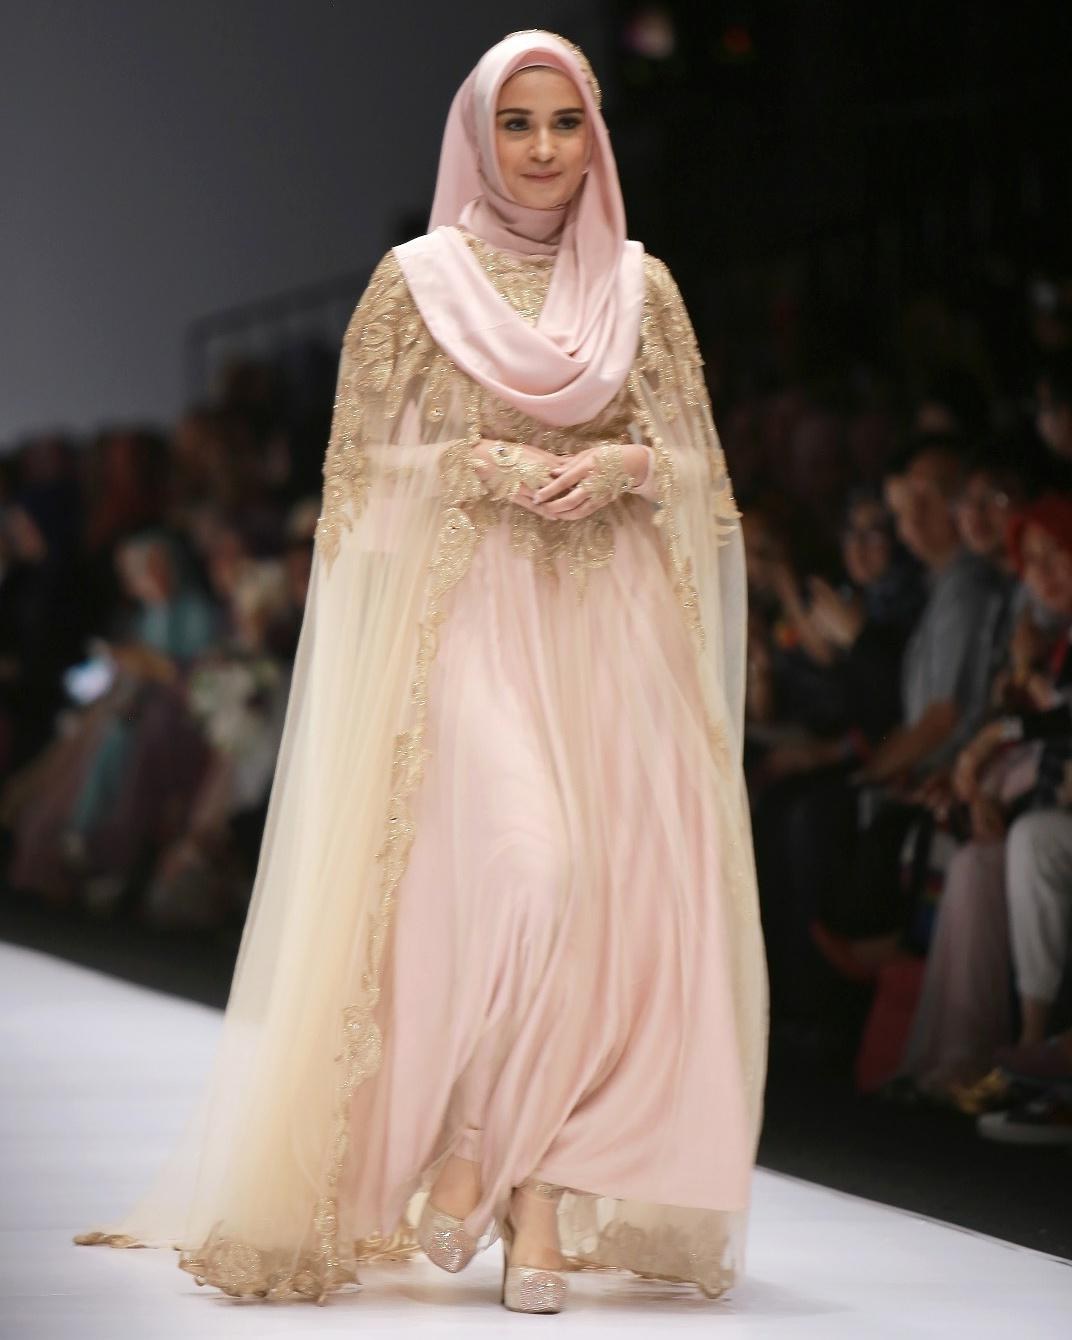 Ide Sewa Gaun Pengantin Muslimah Malang Rldj forum] Buat Pernikahan Gaun Mending Sewa atau Bikin